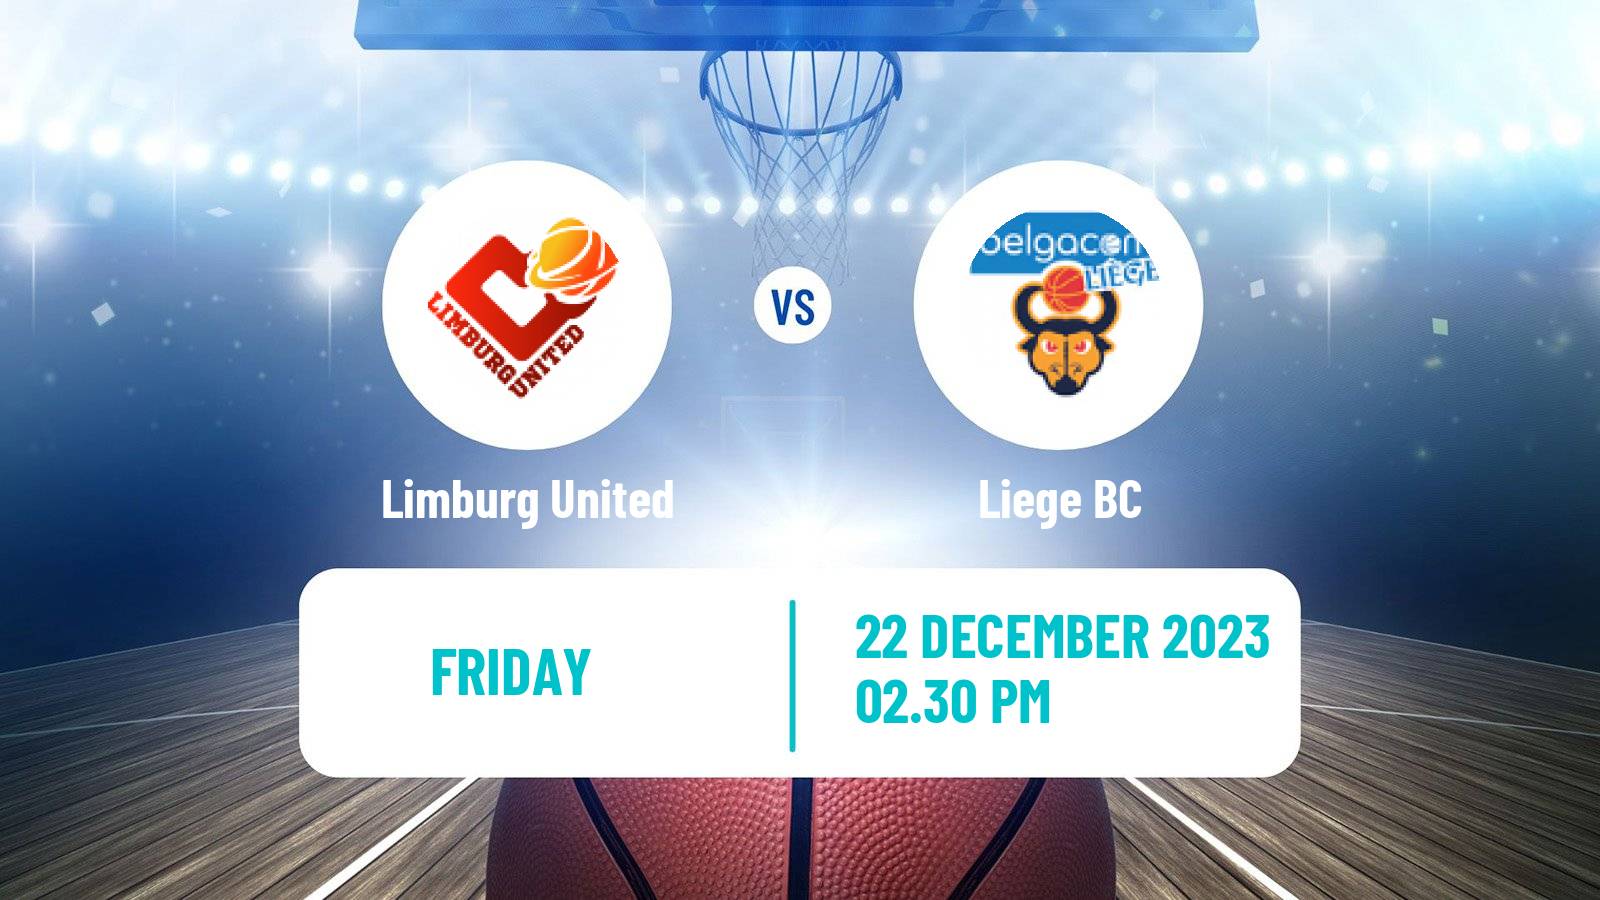 Basketball BNXT League Limburg United - Liege